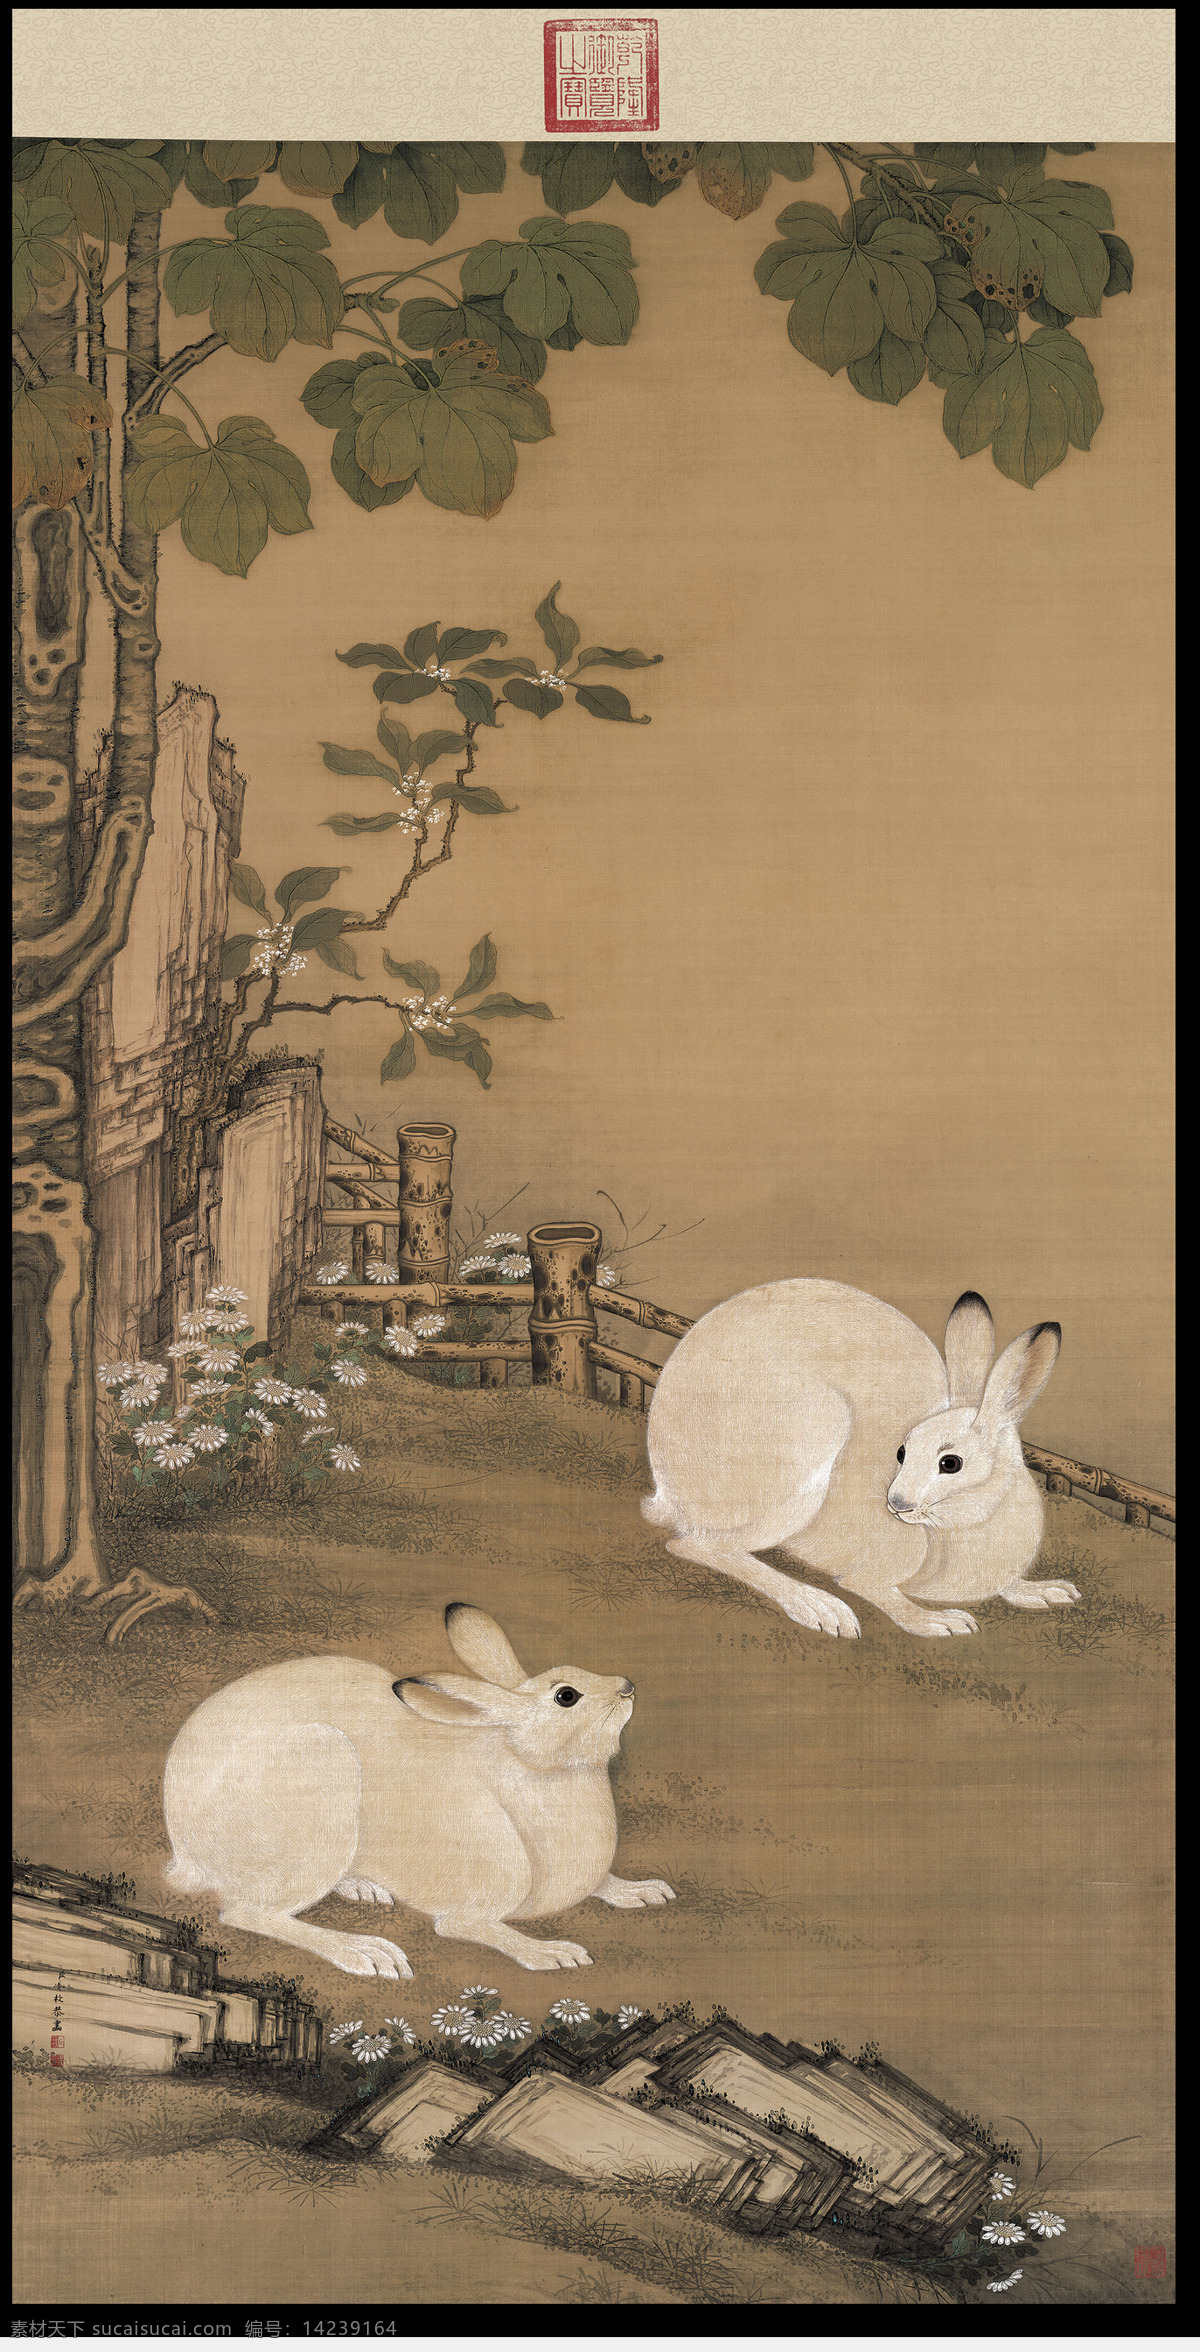 梧桐双兔图 国画 工笔画 中国画 兔子 国画艺术 文化艺术 绘画书法